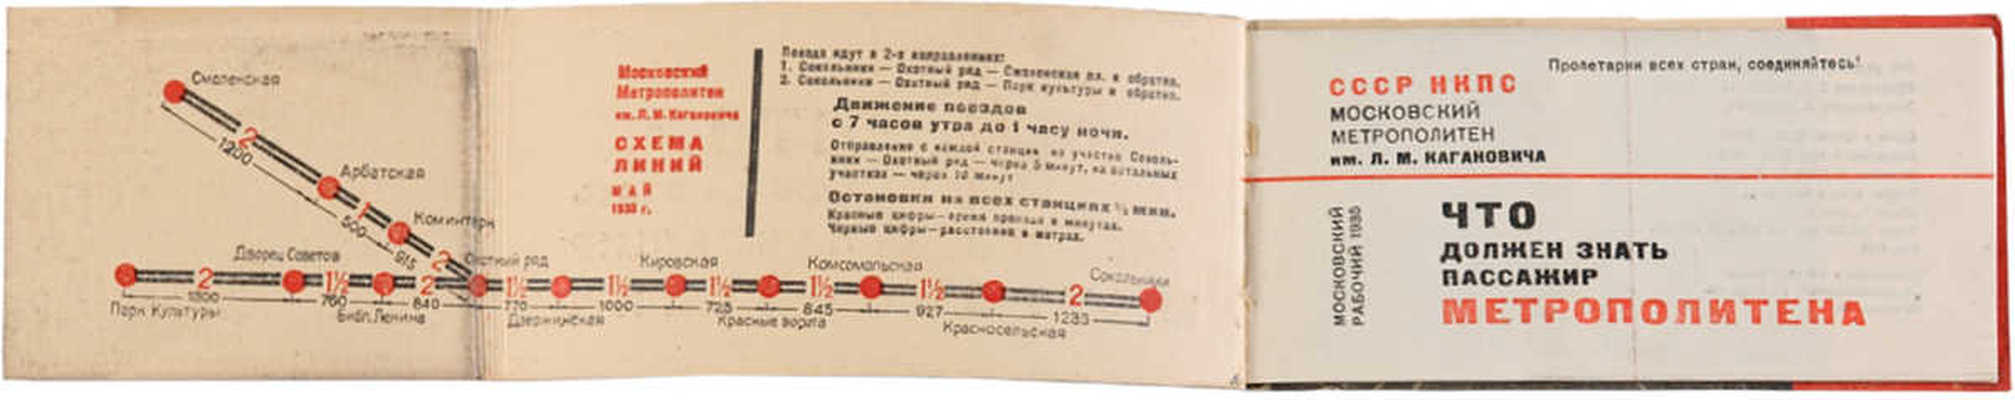 Что должен знать пассажир метрополитена. [М.]: Моск. рабочий, 1935.